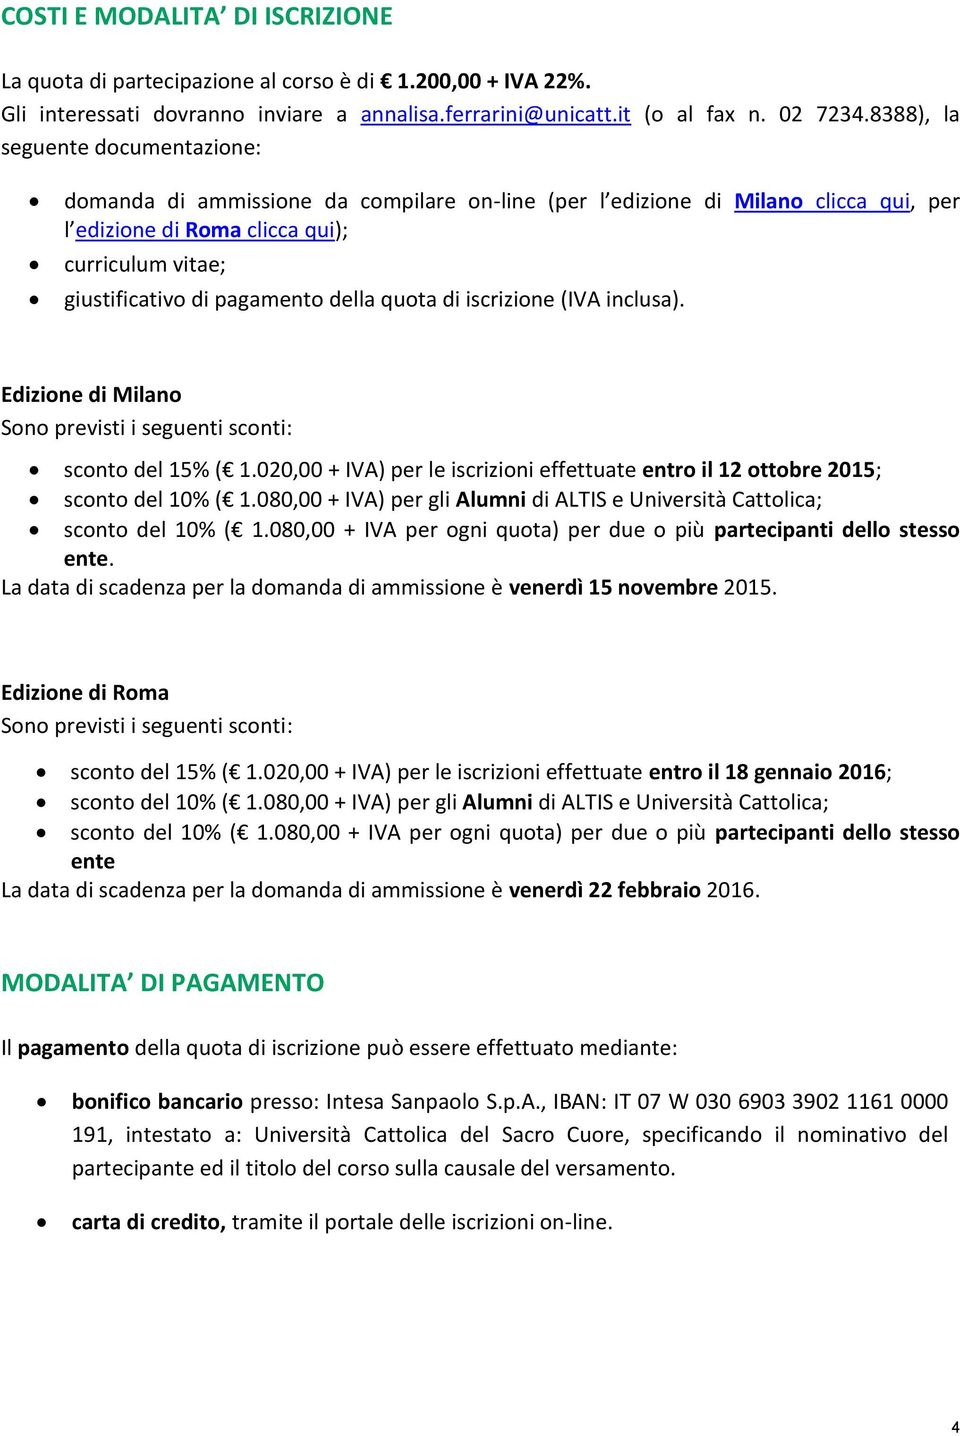 della quota di iscrizione (IVA inclusa). Edizione di Milano Sono previsti i seguenti sconti: sconto del 15% ( 1.020,00 + IVA) per le iscrizioni effettuate entro il 12 ottobre 2015; sconto del 10% ( 1.